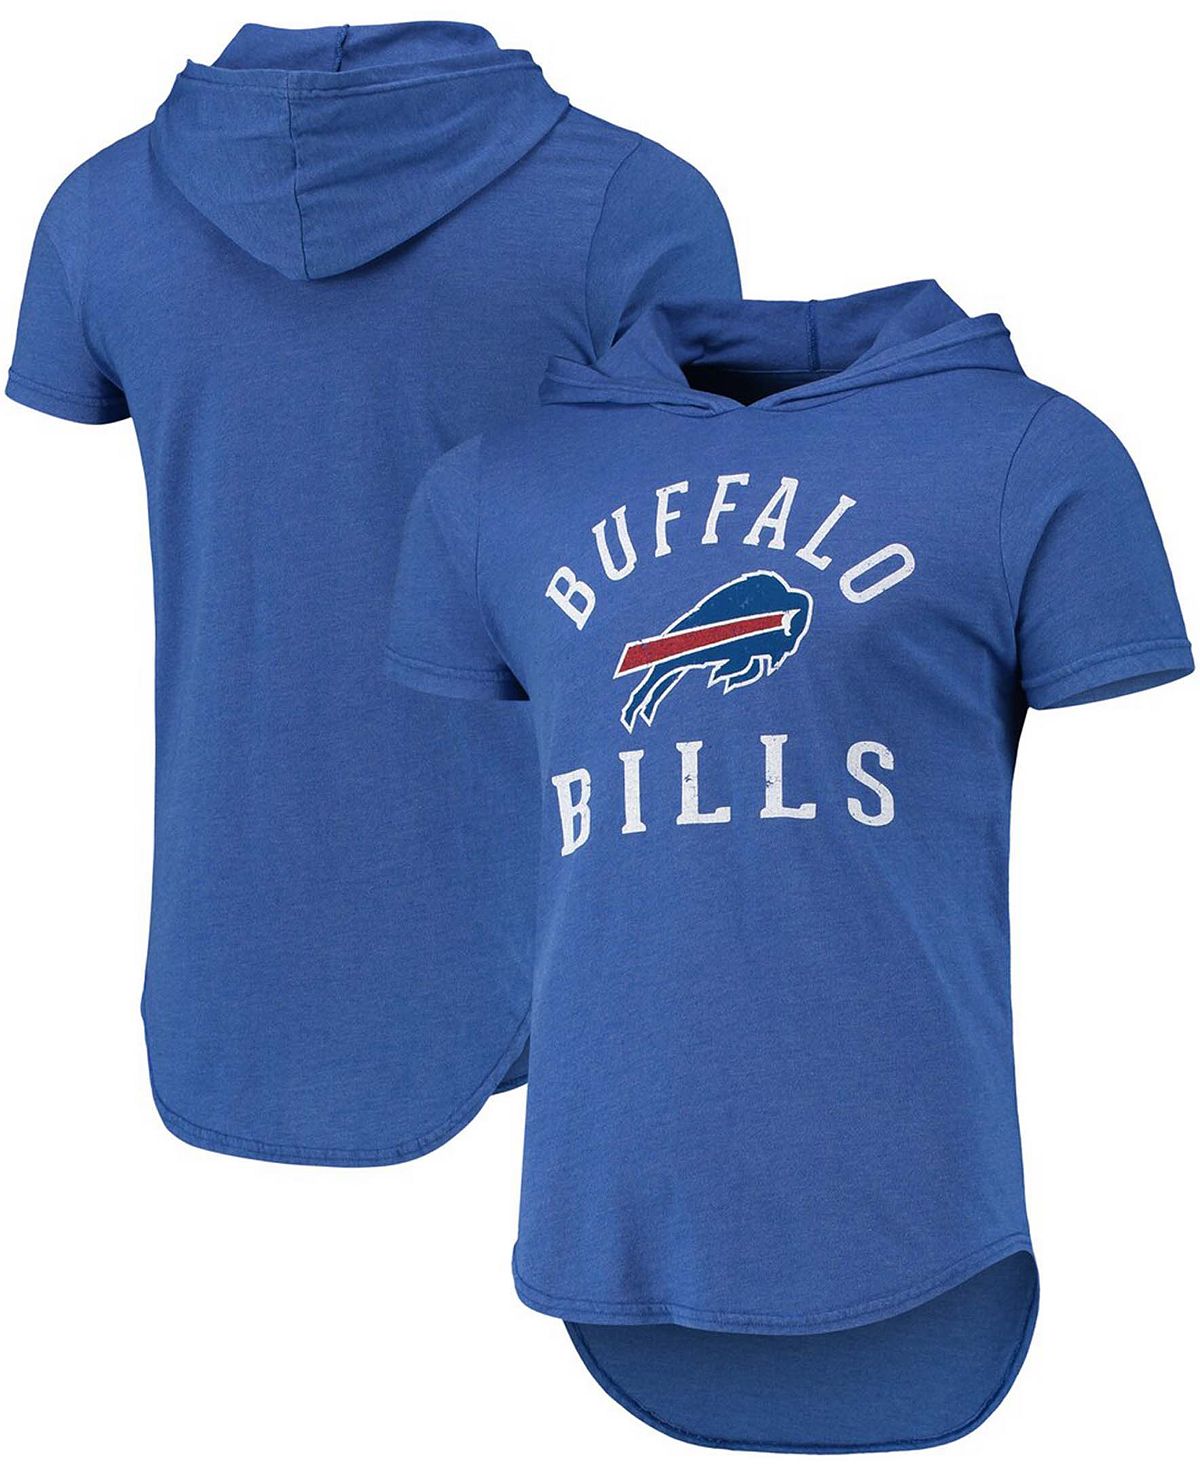 Мужская футболка с капюшоном royal buffalo bills field goal tri-blend с меланжевым покрытием Fanatics, мульти